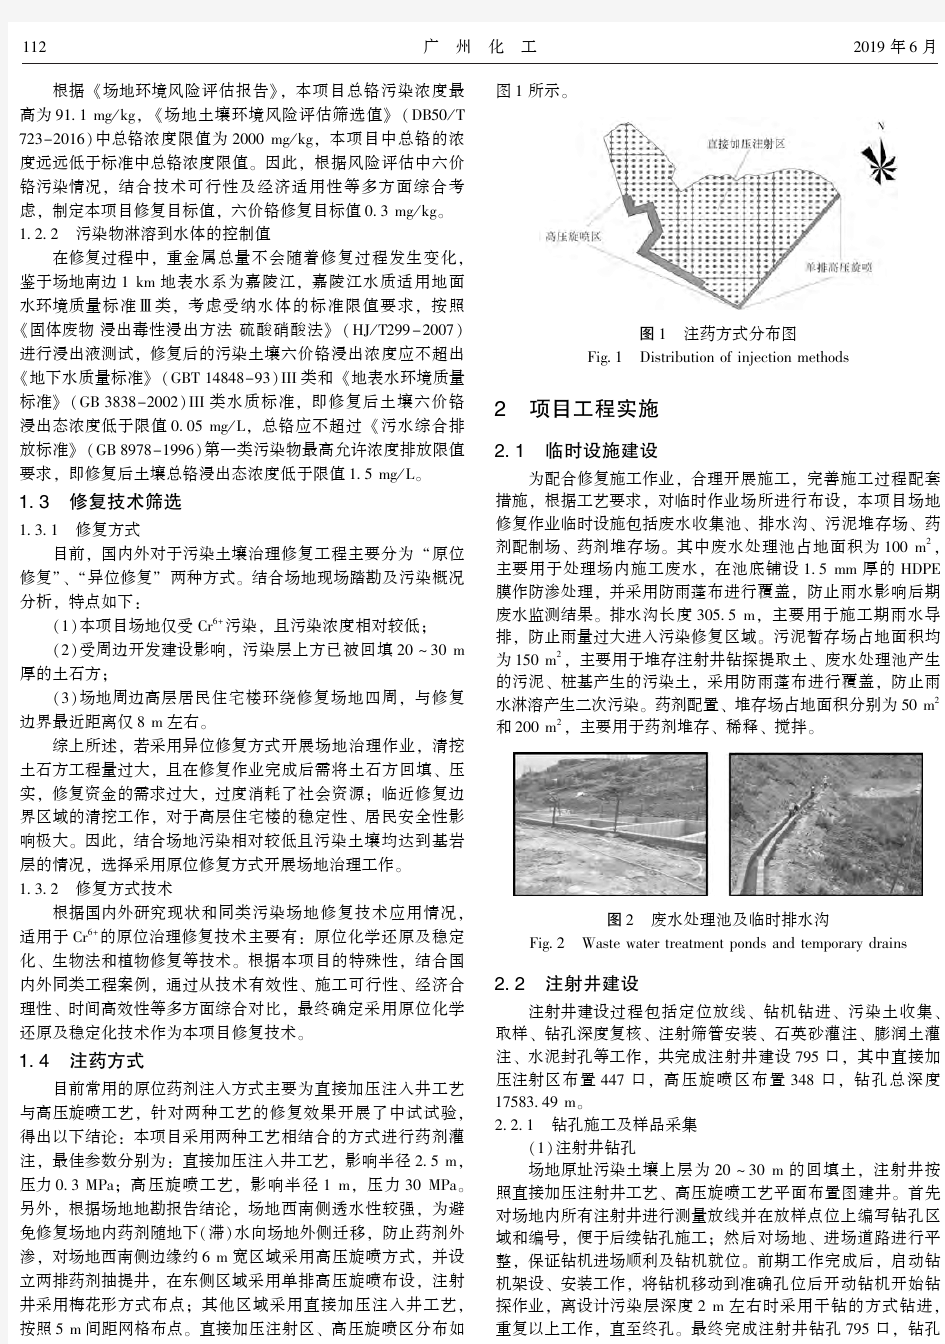 重庆某六价铬污染场地土壤修复工程案例